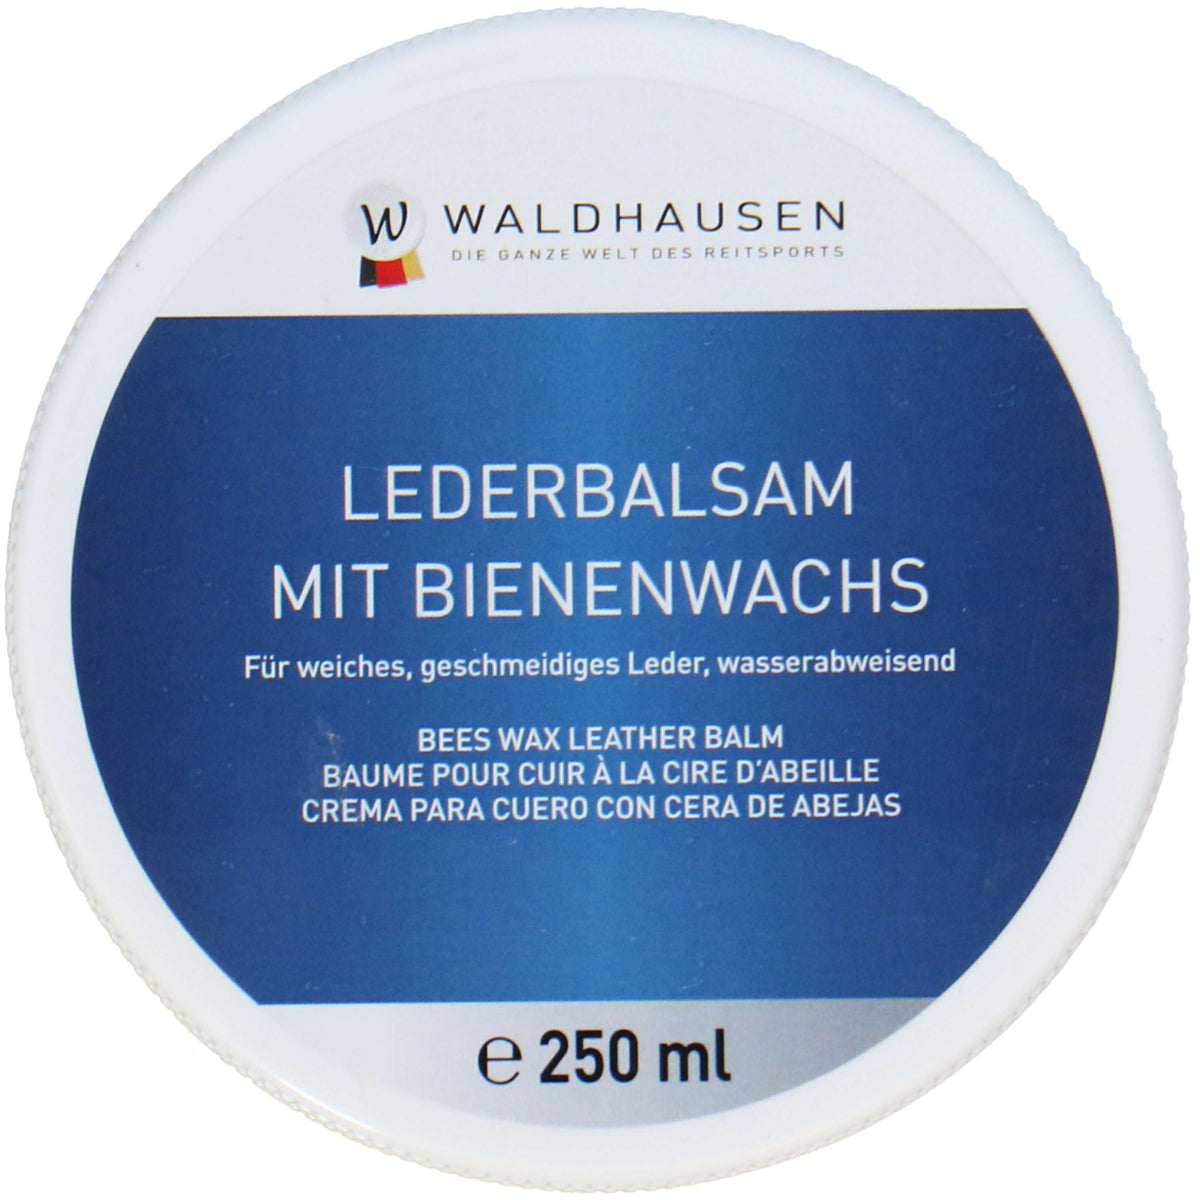 Waldhausen Lederbalsam Bienenwachs